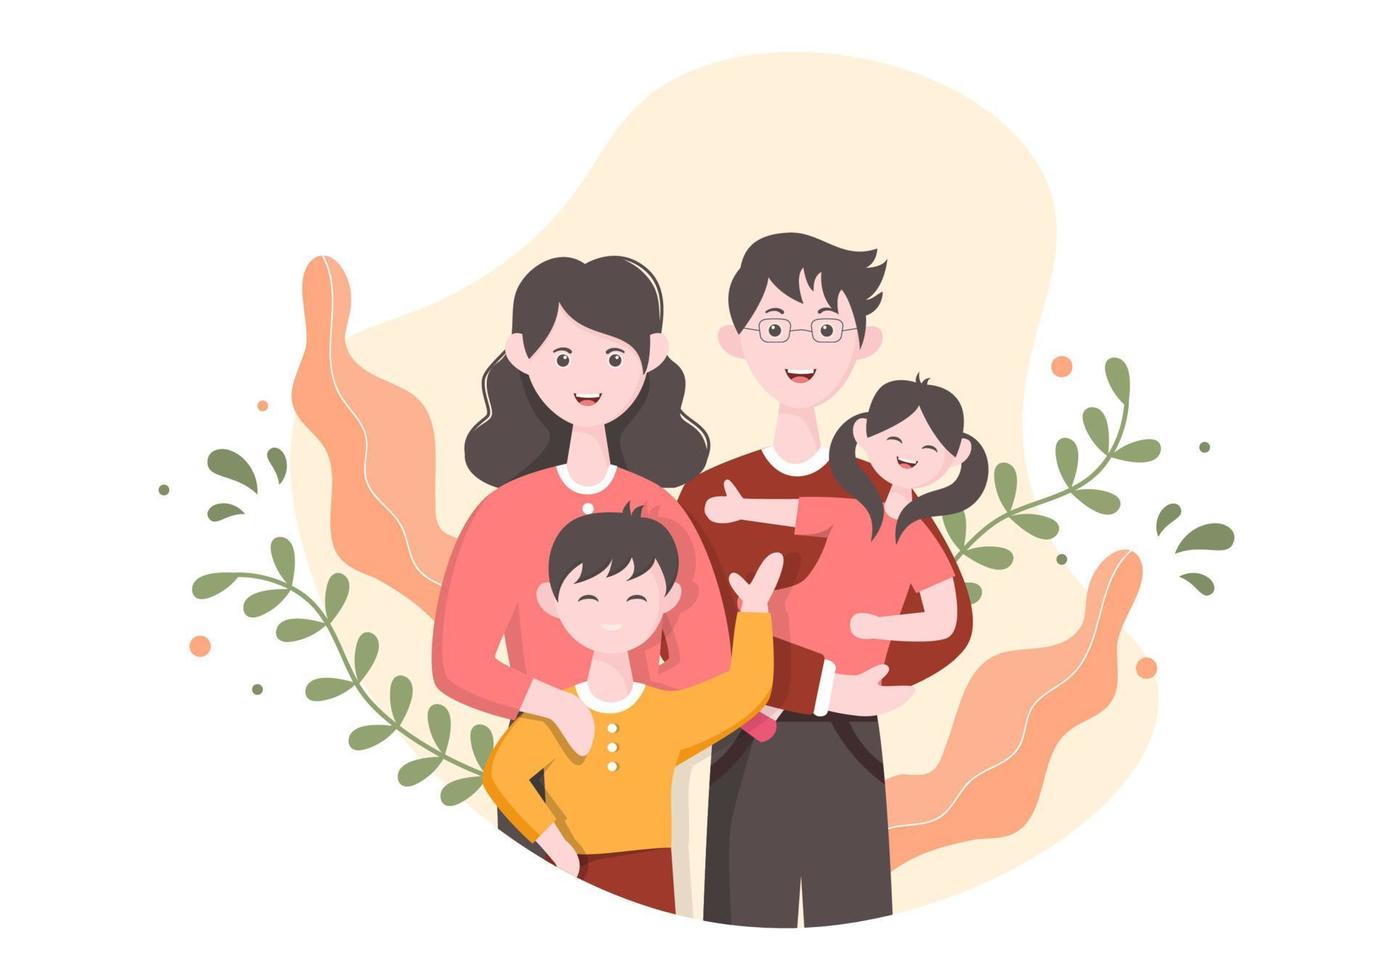 familietijd van vrolijke ouders en kinderen die tijd samen thuis doorbrengen met verschillende ontspannende activiteiten in cartoon vlakke afbeelding voor poster of achtergrond vector